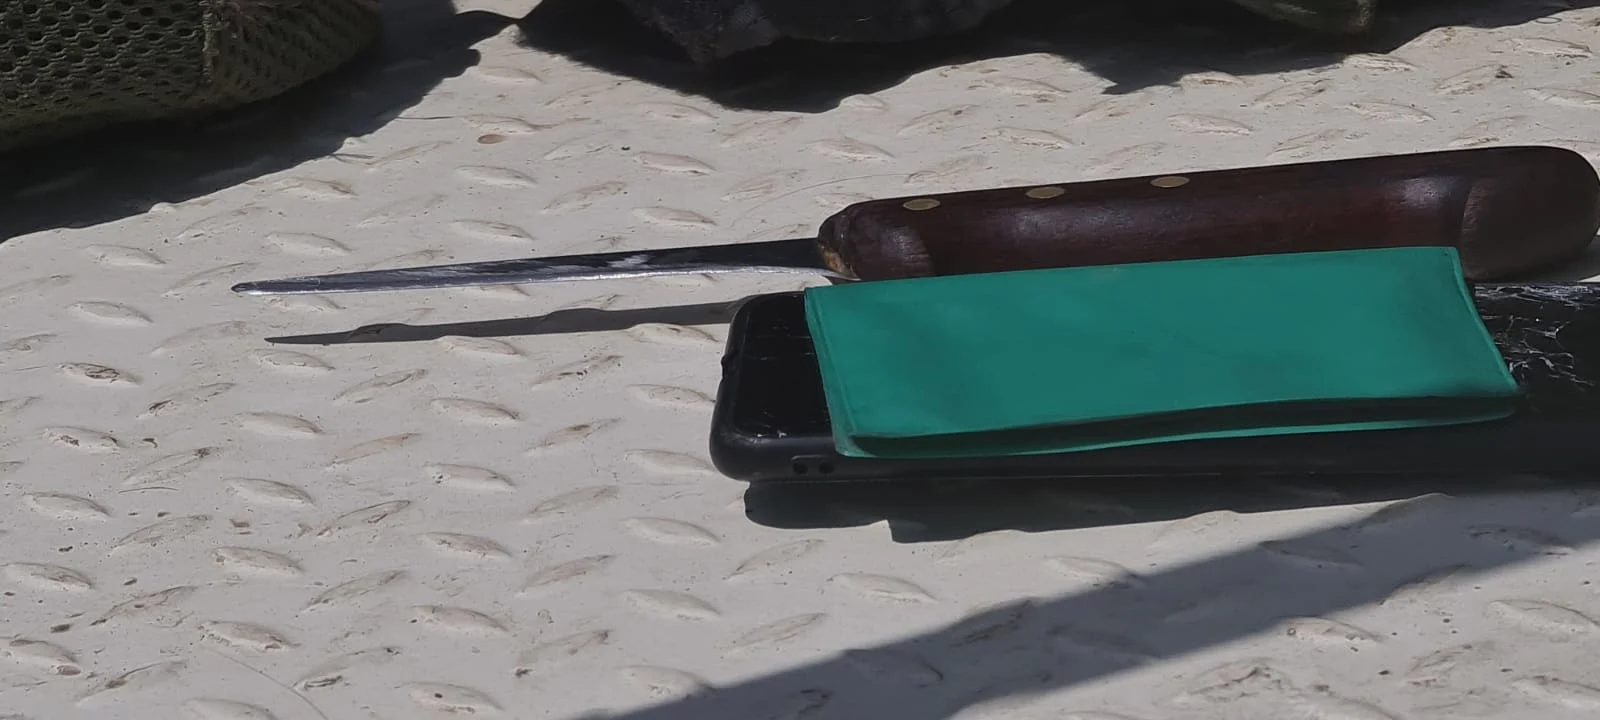 הסכין שנמצאה אצל הפלסטיני שניסה לבצע פיגוע דקירה באריאל